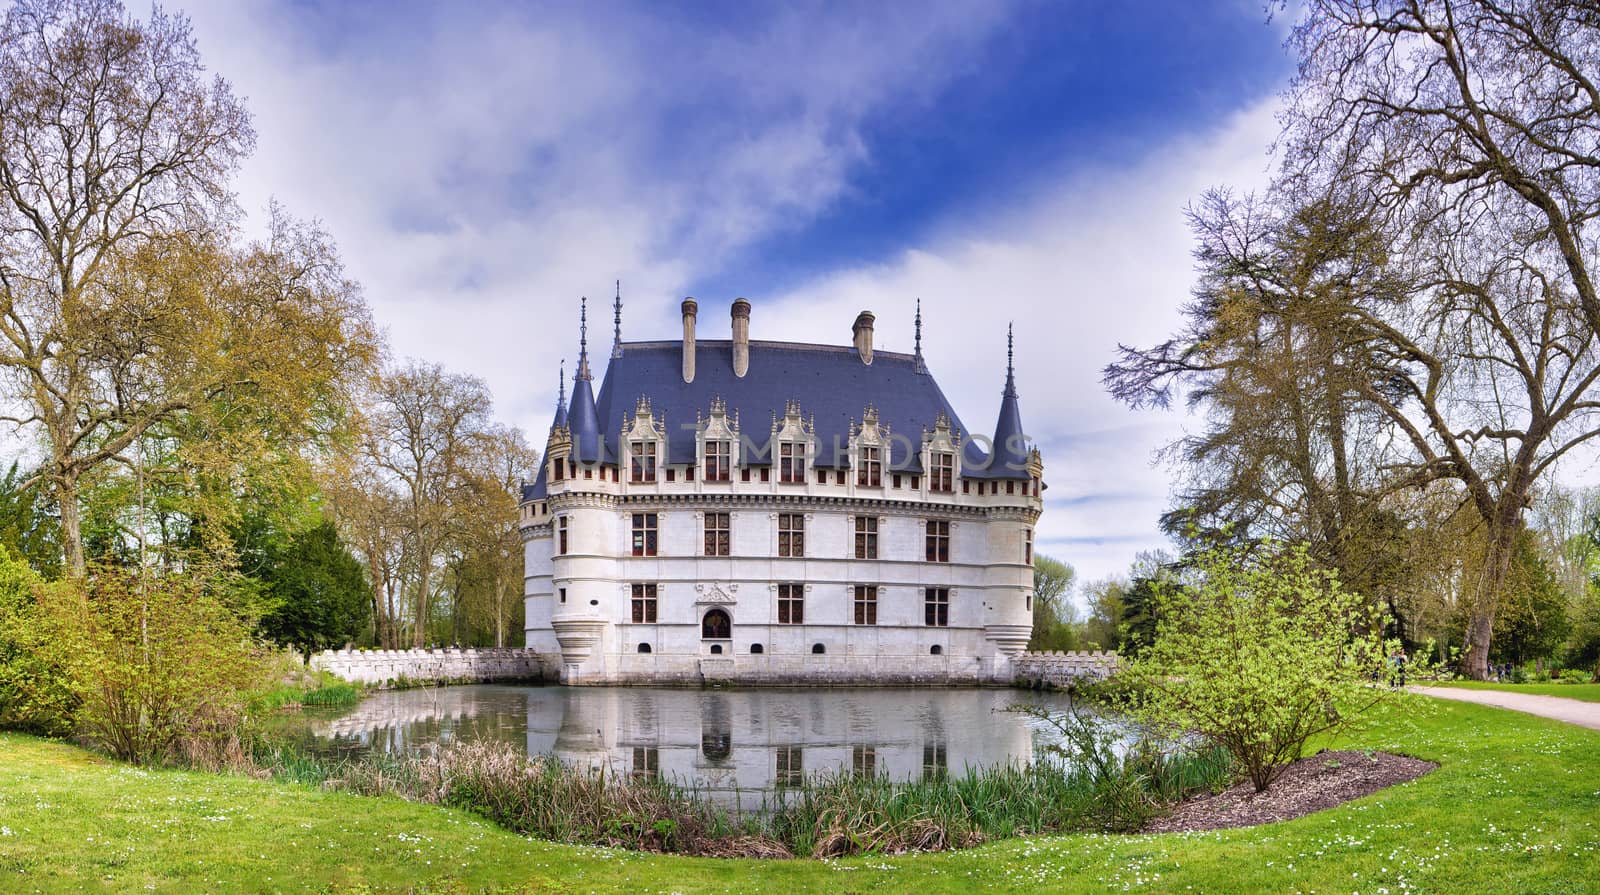 Chateau d'Azay-le-Rideau in Loire Valley, France. by CreativePhotoSpain